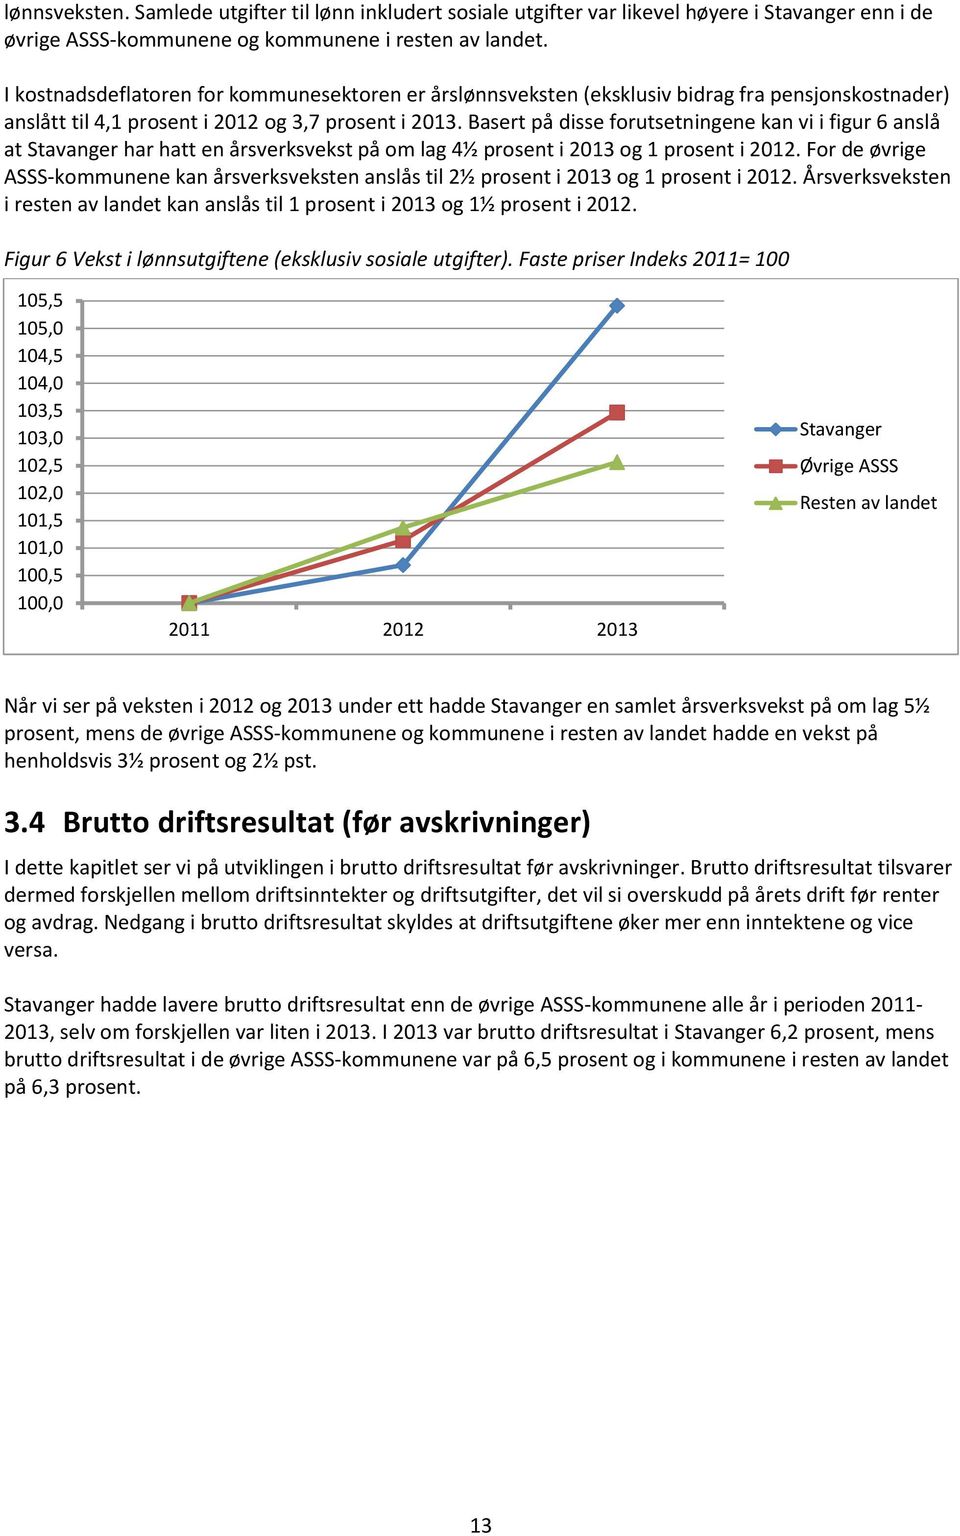 Basert på disse forutsetningene kan vi i figur 6 anslå at Stavanger har hatt en årsverksvekst på om lag 4½ prosent i 2013 og 1 prosent i 2012.